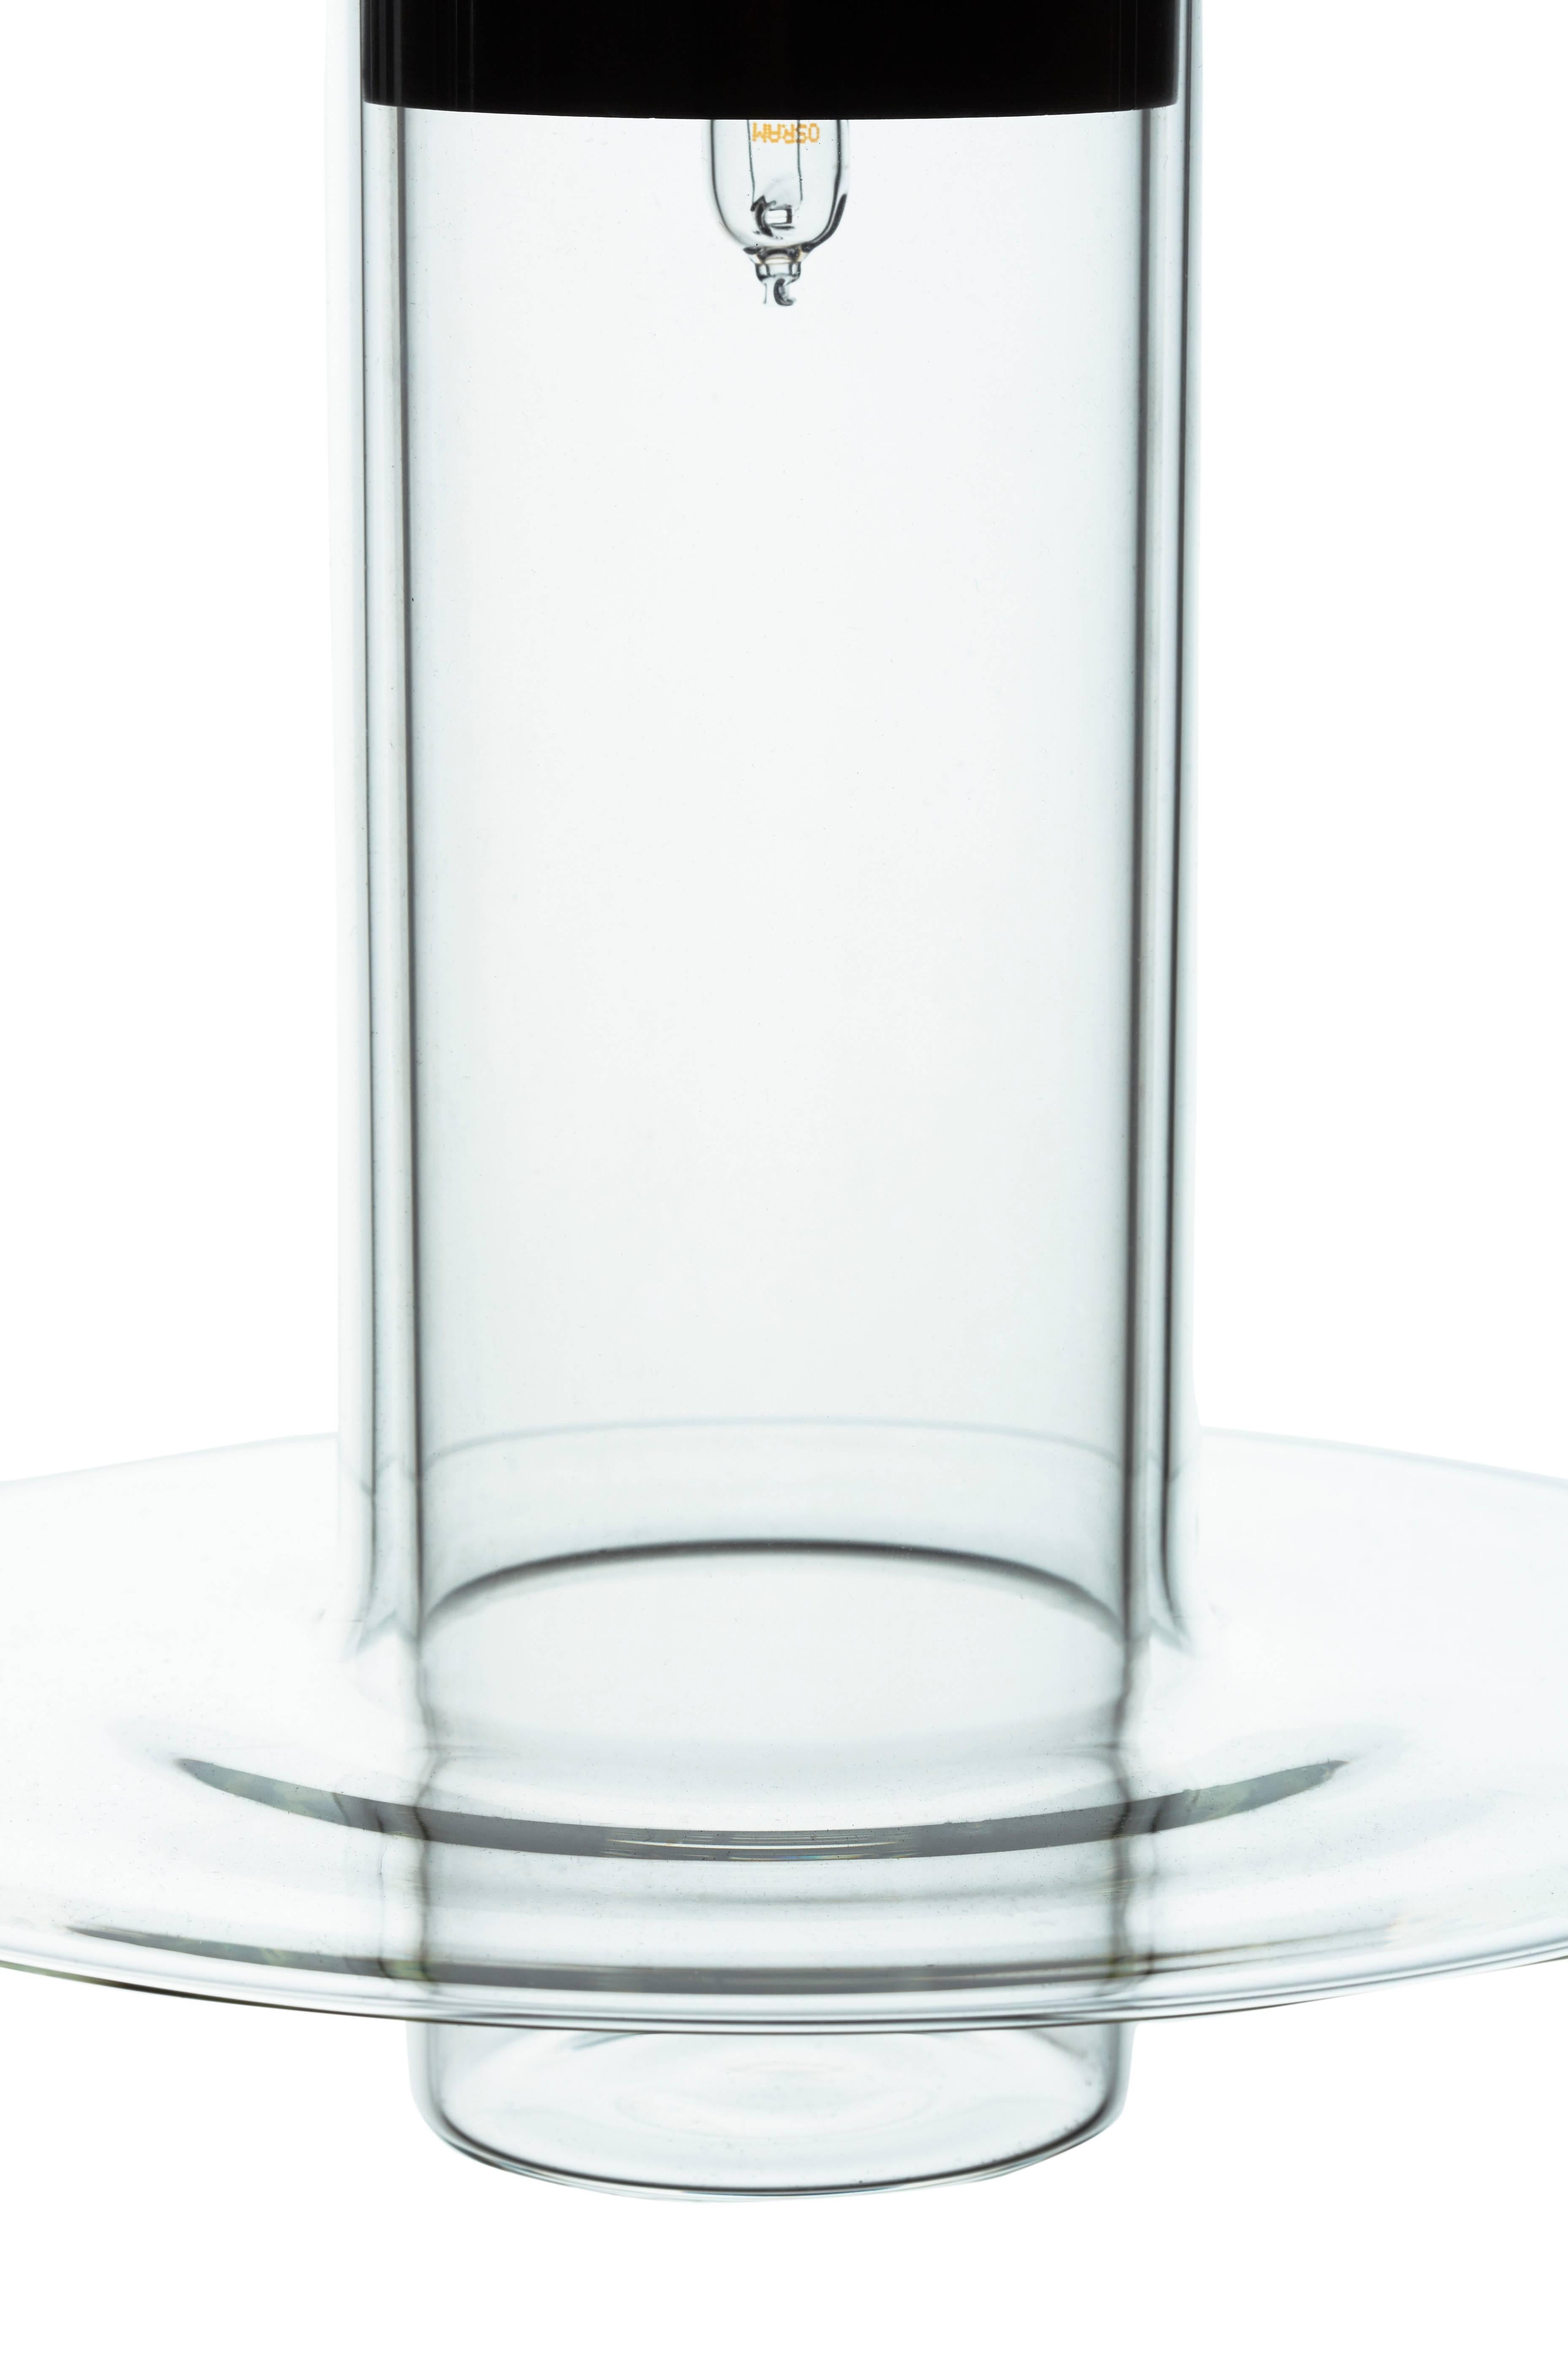 Pawsons Entwurf setzt einen handgefertigten Glaszylinder in einen anderen, wobei sich der äußere Zylinder an seinem unteren Rand zu einer raffinierten Scheibenlippe erweitert. Die Lampe wirft ihr Licht nach unten, aber ihr klarer Körper leuchtet